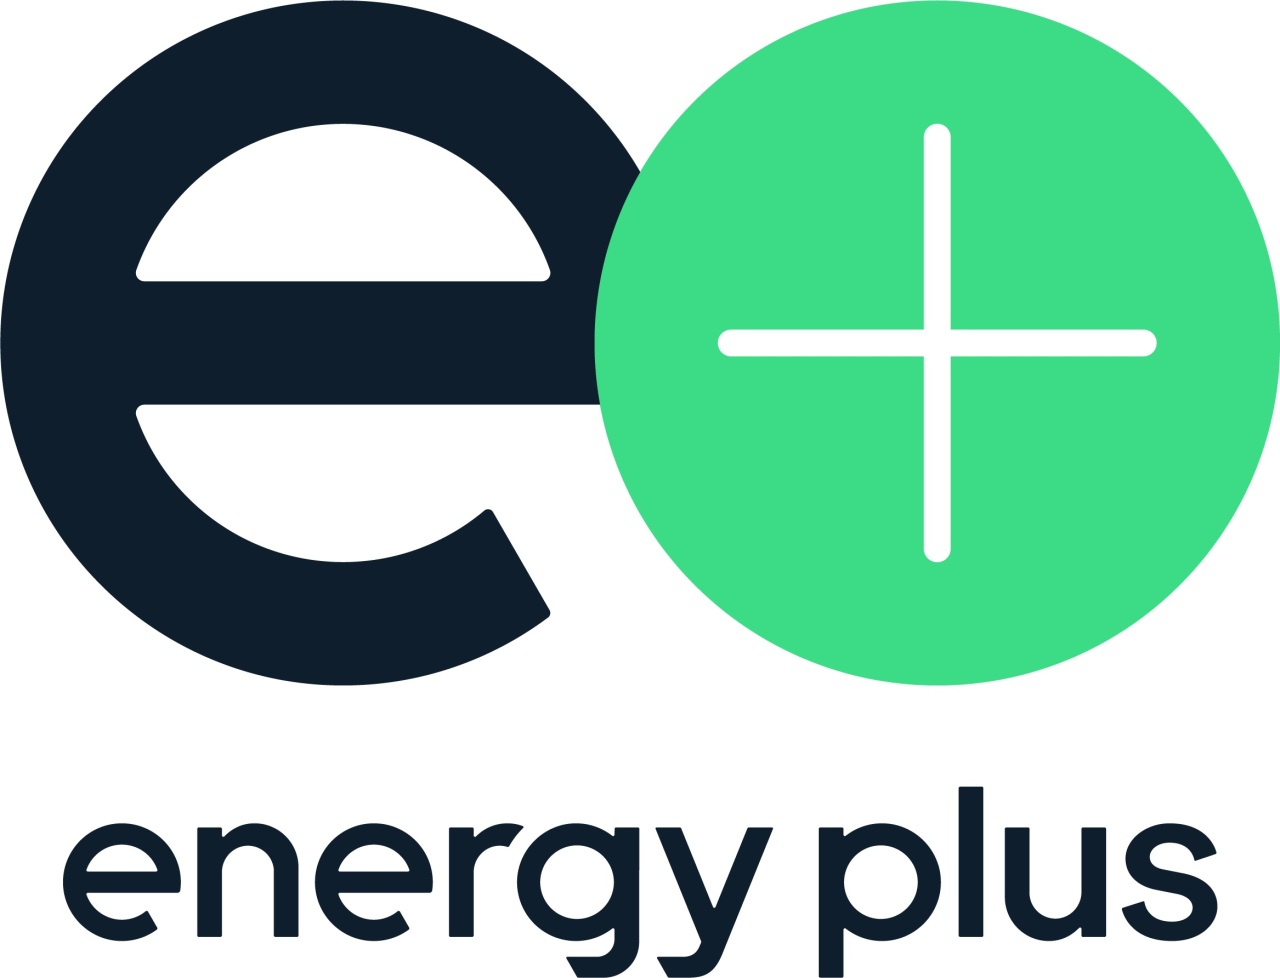 GS Caltex’s new brand Energy Plus